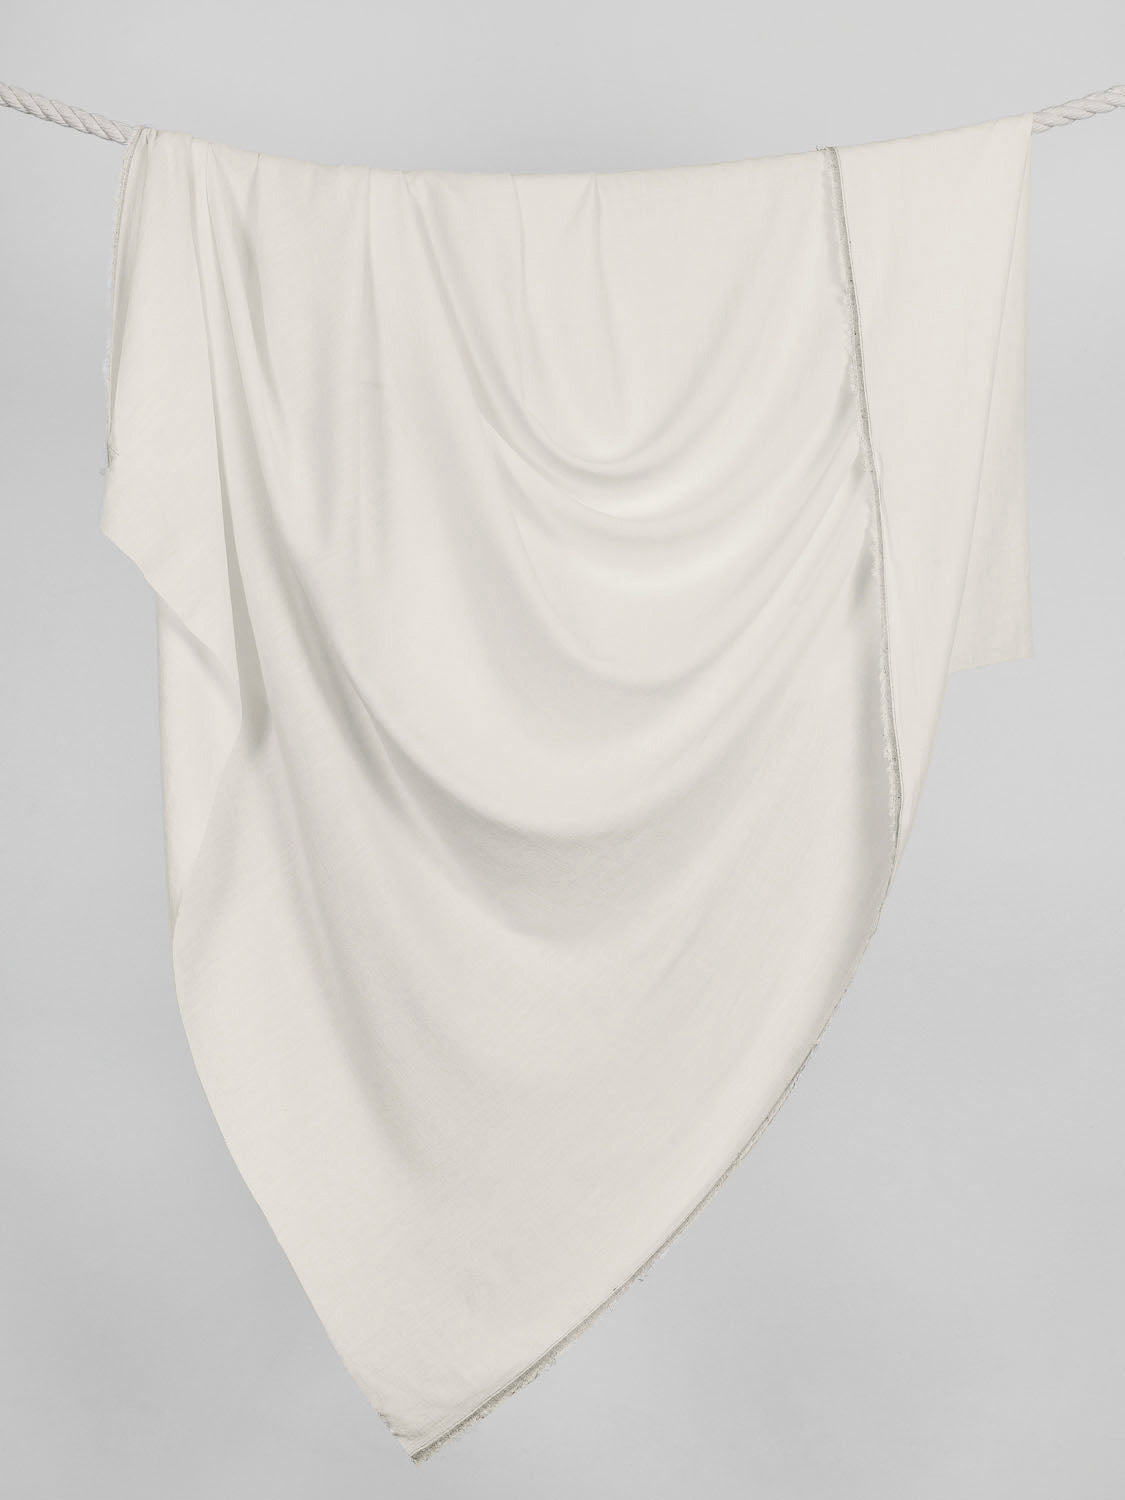 F-VIS066-026-Textured-Viscose-Linen-Off-White-Core-Fabrics-draped_558d7b6a-3621-444a-8237-c76980d3e7b7.jpg